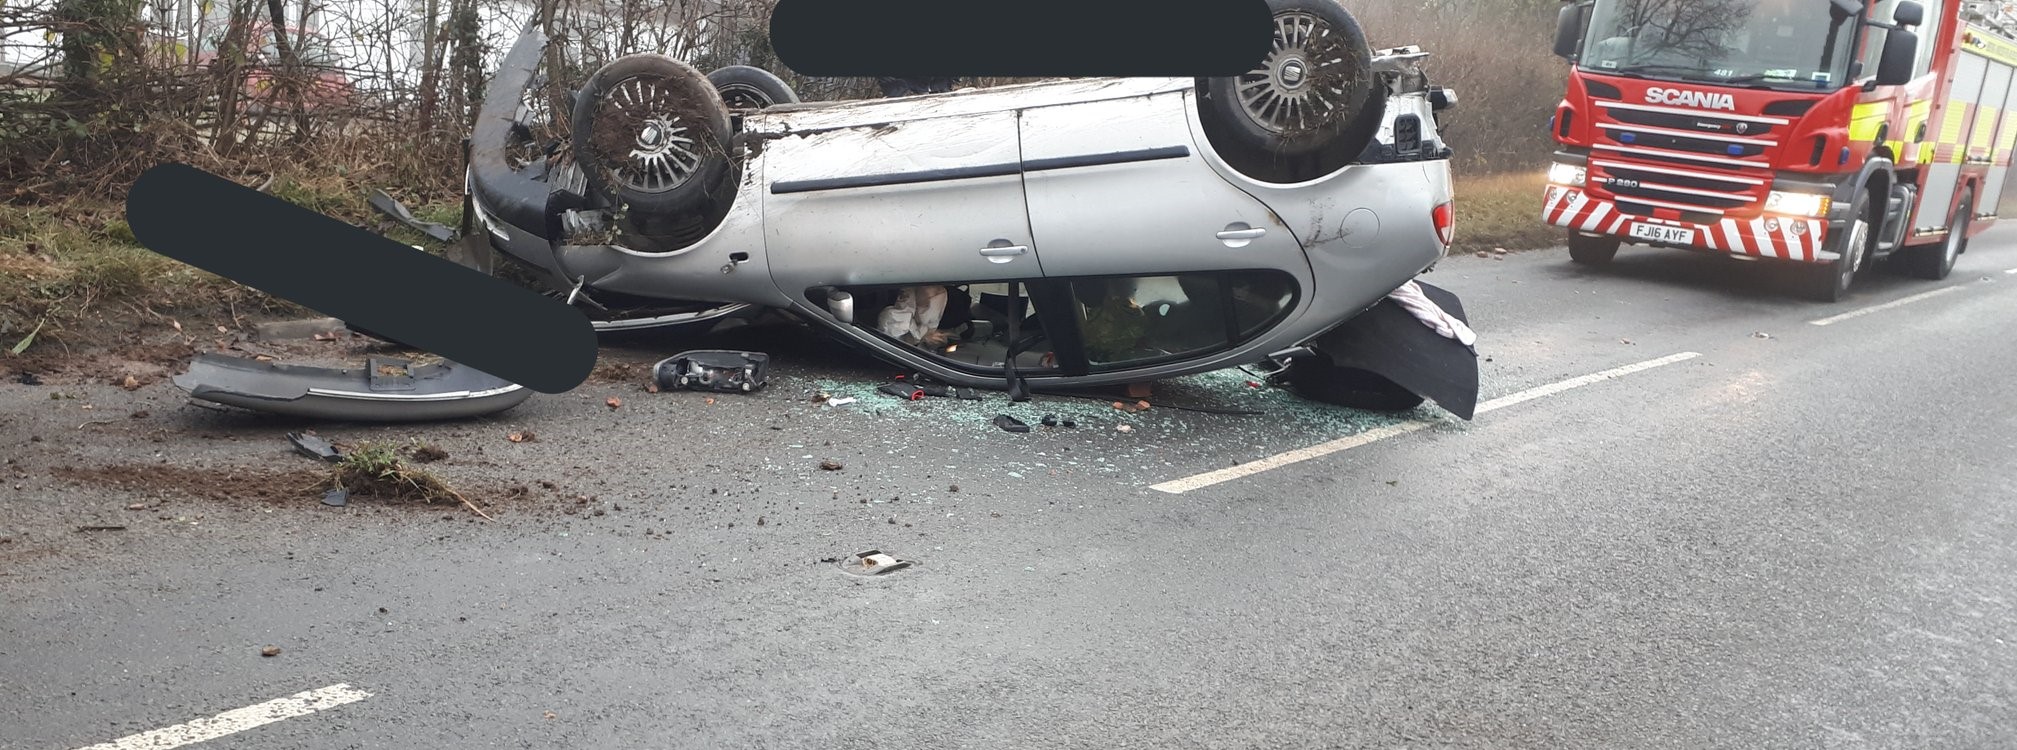 NEWS | Suspected drug driver arrested after crash in Herefordshire